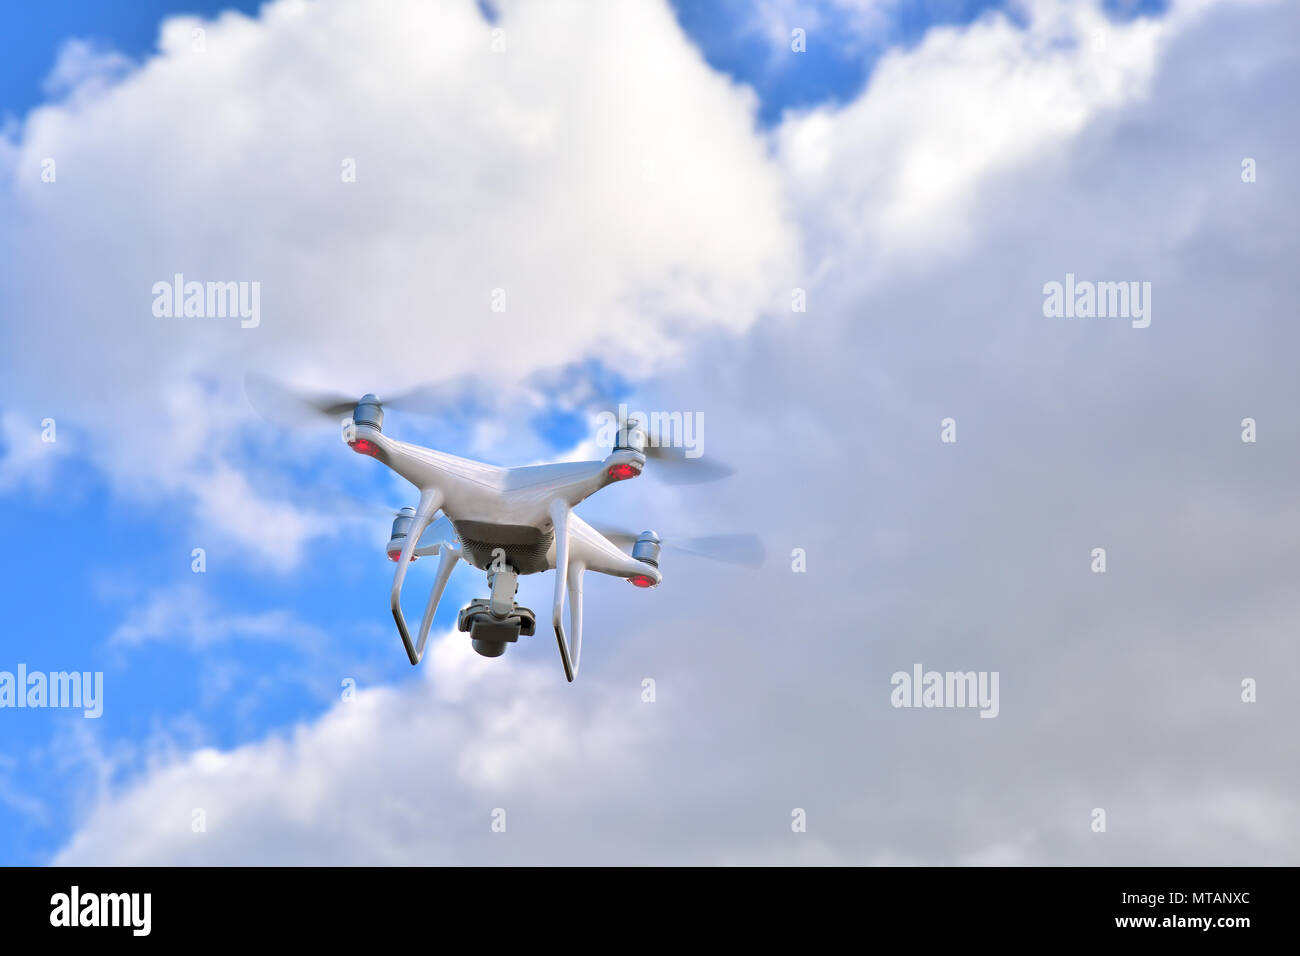 Professionelle drone mit Kamera für Foto- und Videoaufnahmen fliegen mit dem Himmel mit Wolken im Hintergrund Stockfoto